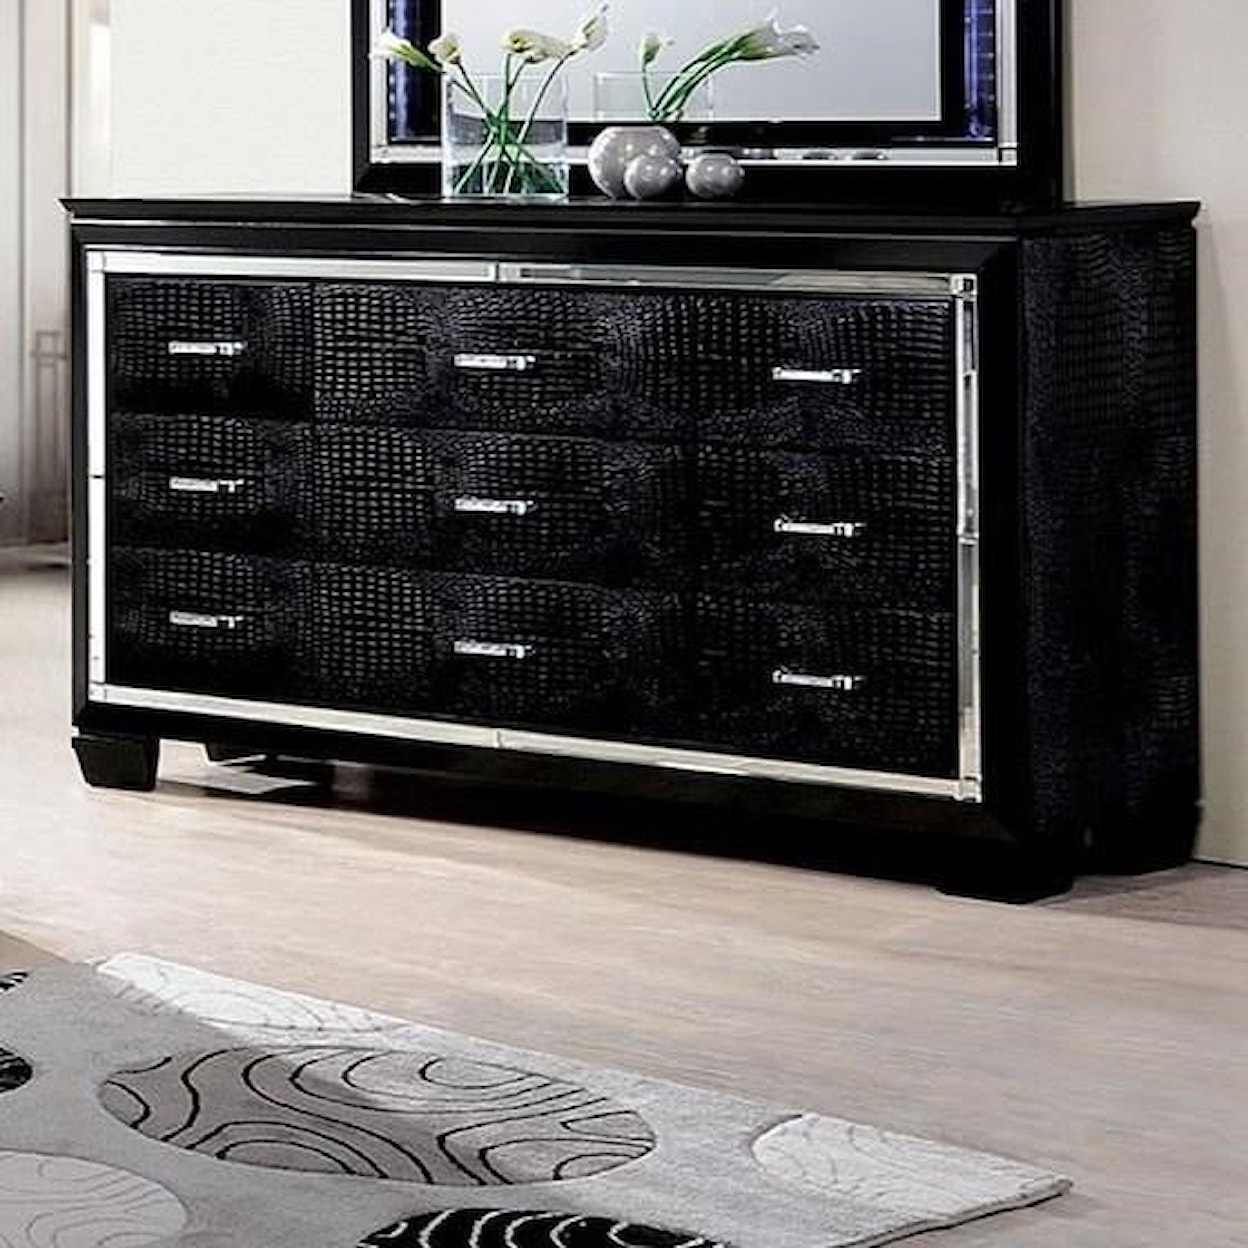 Furniture of America - FOA Bellanova Dresser